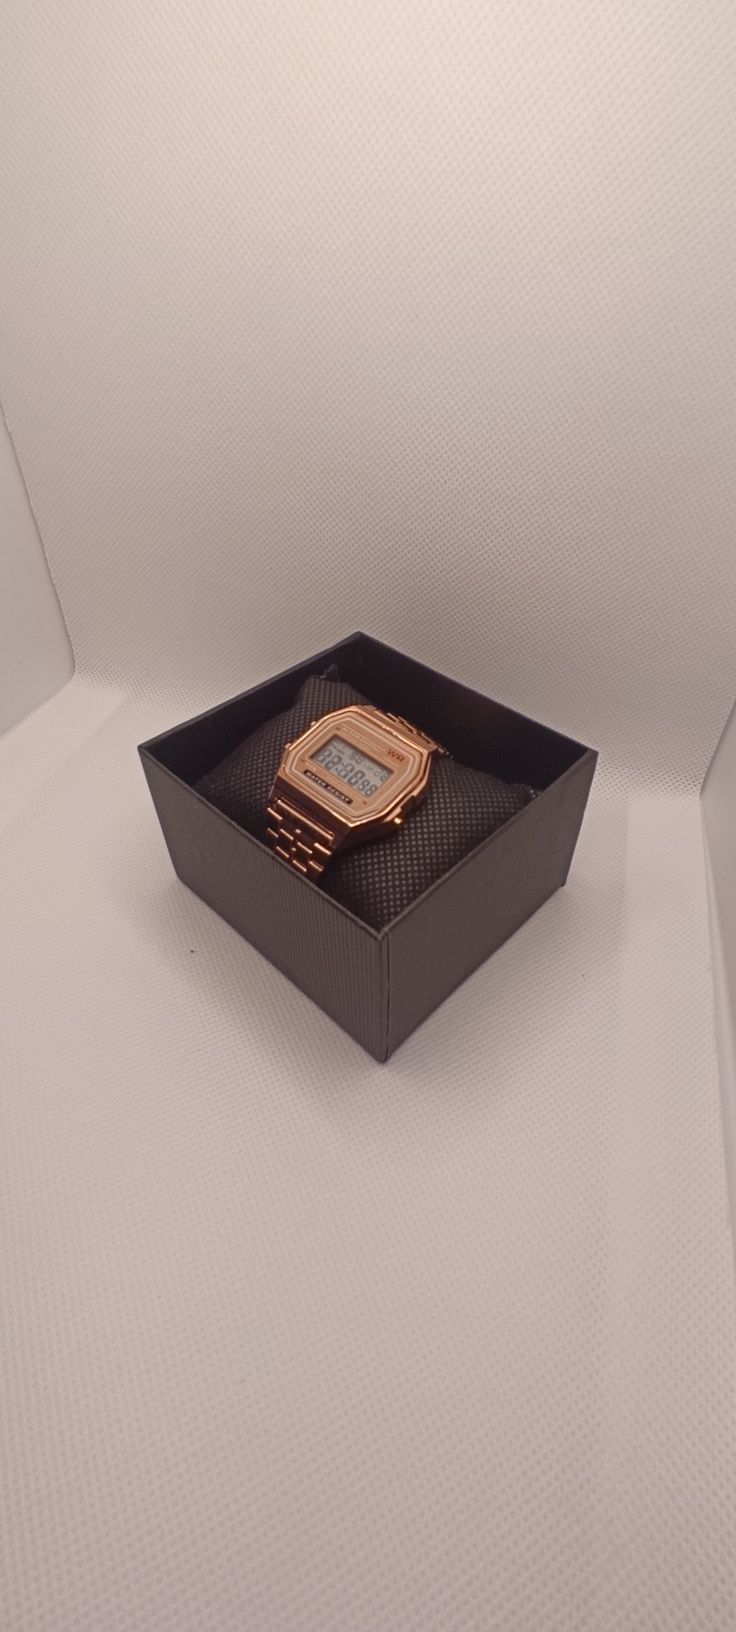 Klasyczny zegarek+ prezent GRATIS